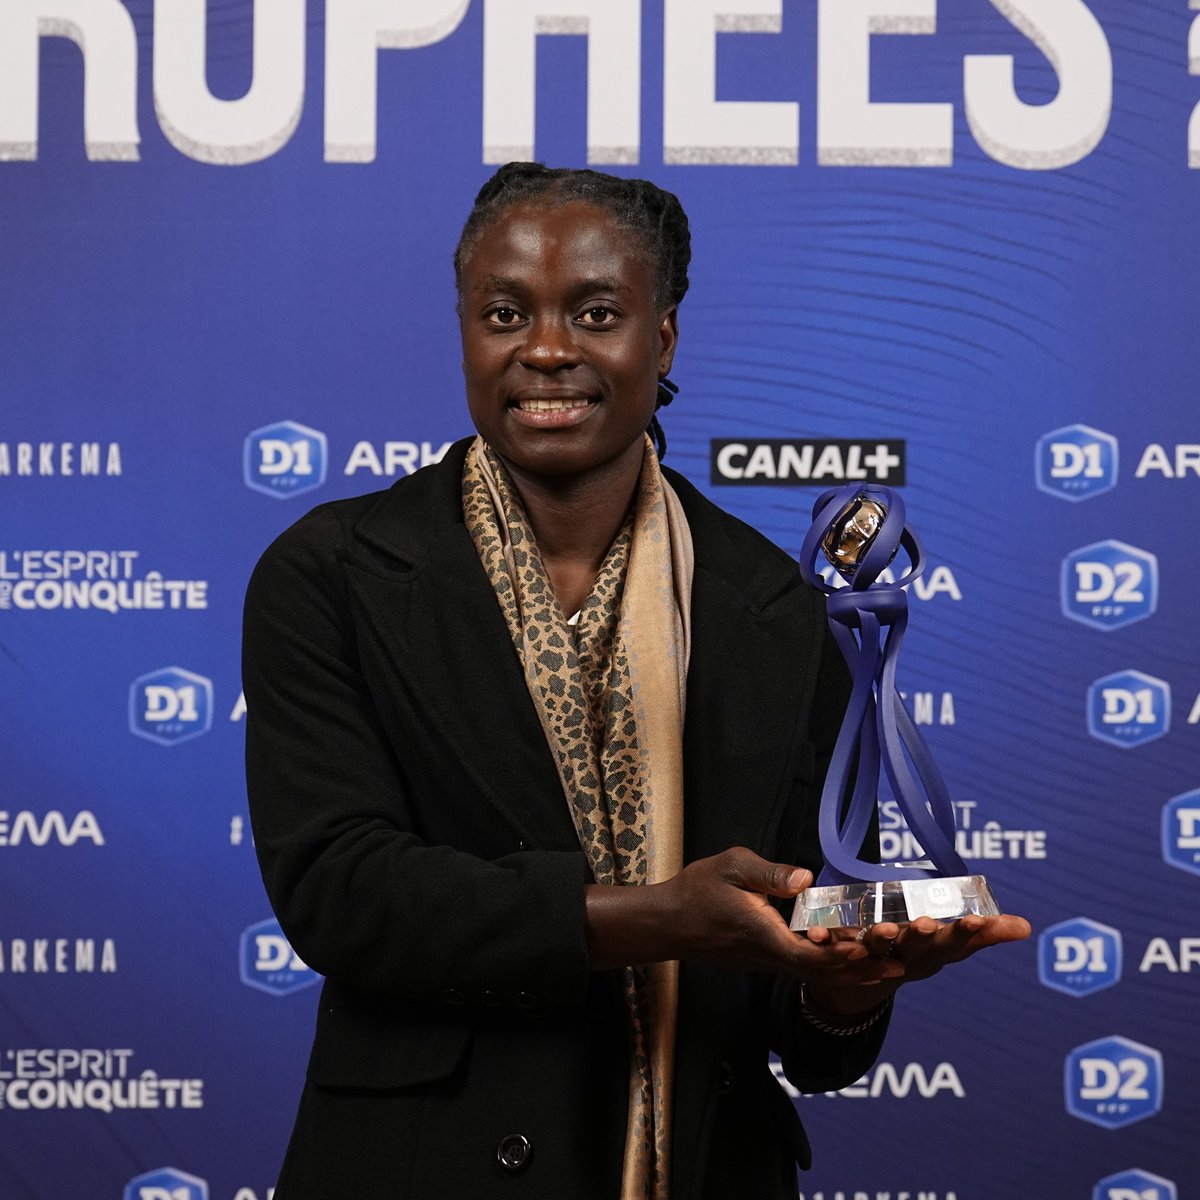 Tabitha Chawinga est élue meilleure joueuse de D1 Arkema !

Félicitations à notre Parisienne qui mérite amplement cette récompense 👏🏅

Bravo également à Grace Geyoro, elle aussi nommée, qui a réalisé une très belle saison 🫡 ❤️💙
#TrophéesD1Arkema

📸 @D1Arkema